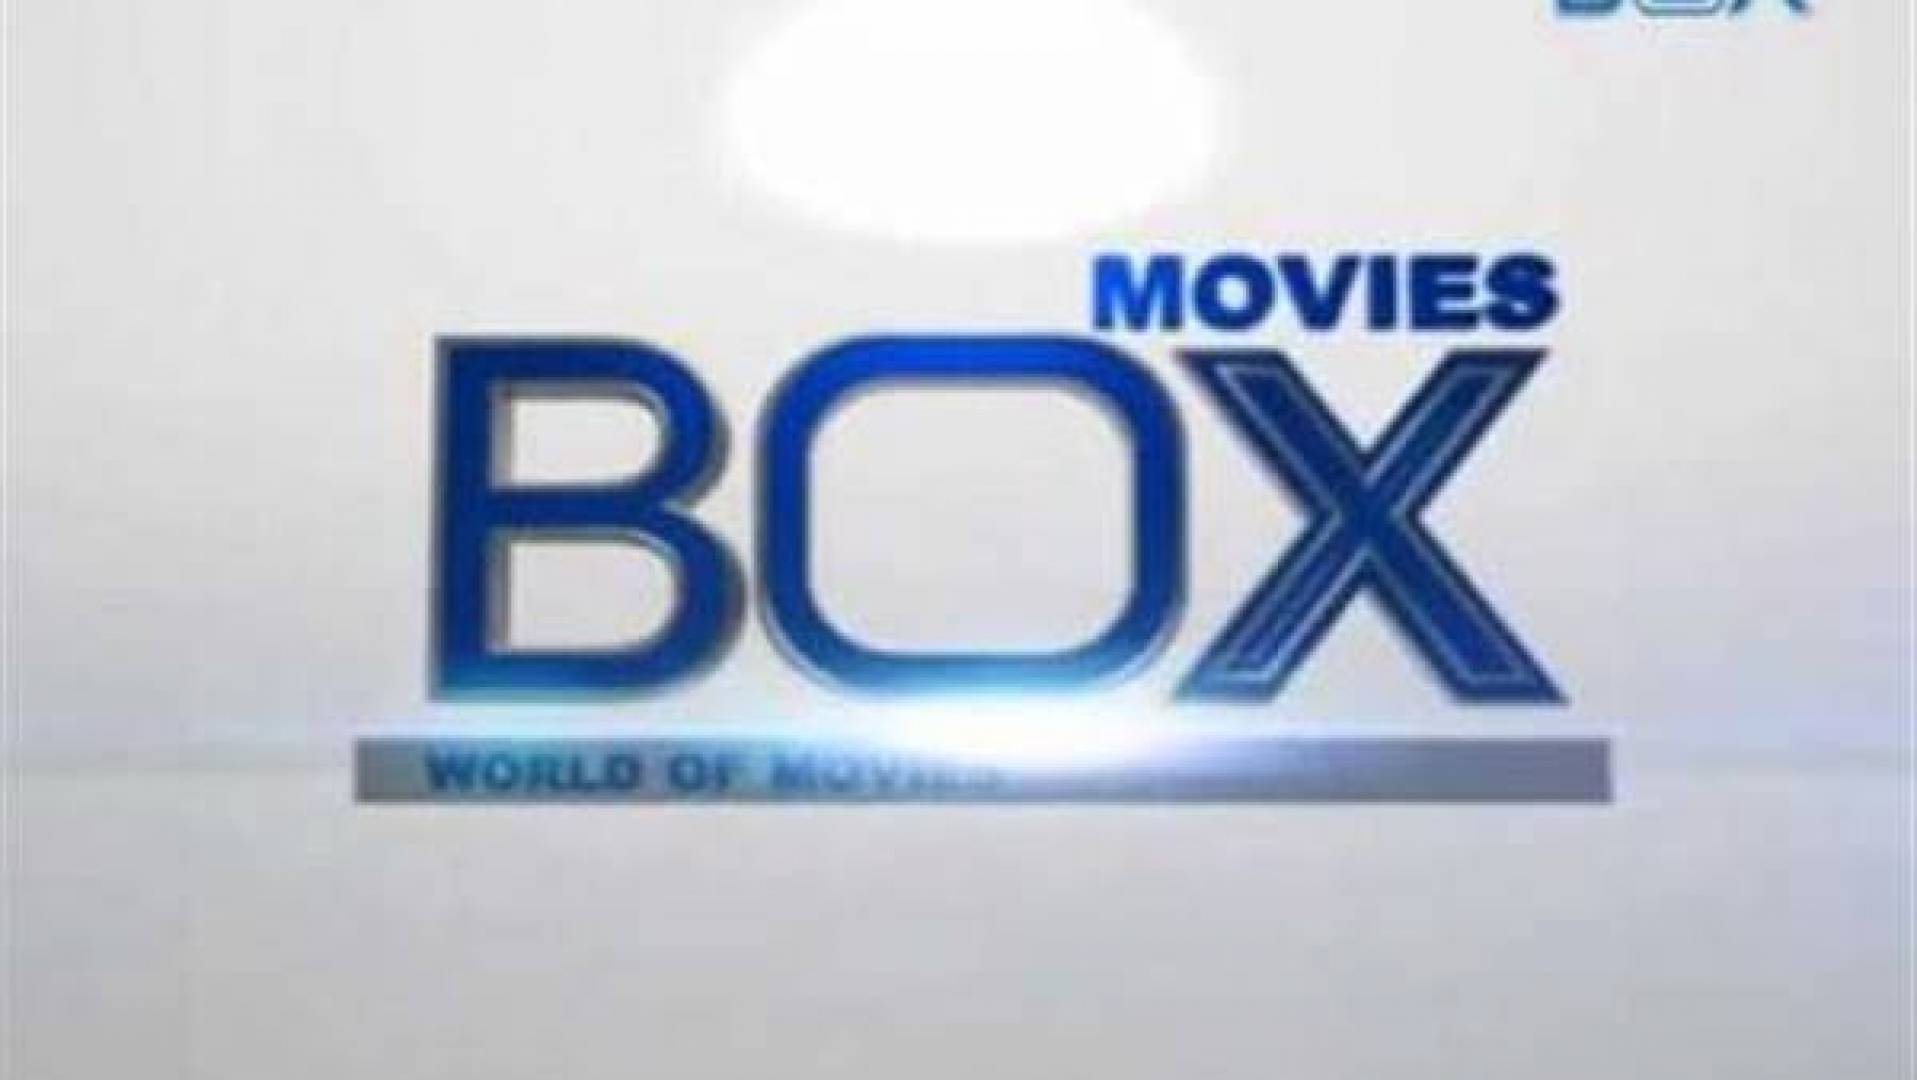 استقبل| تردد قناة Box movies الجديد 2023 لمشاهدة الأفلام الحصرية بأعلى جودة HD